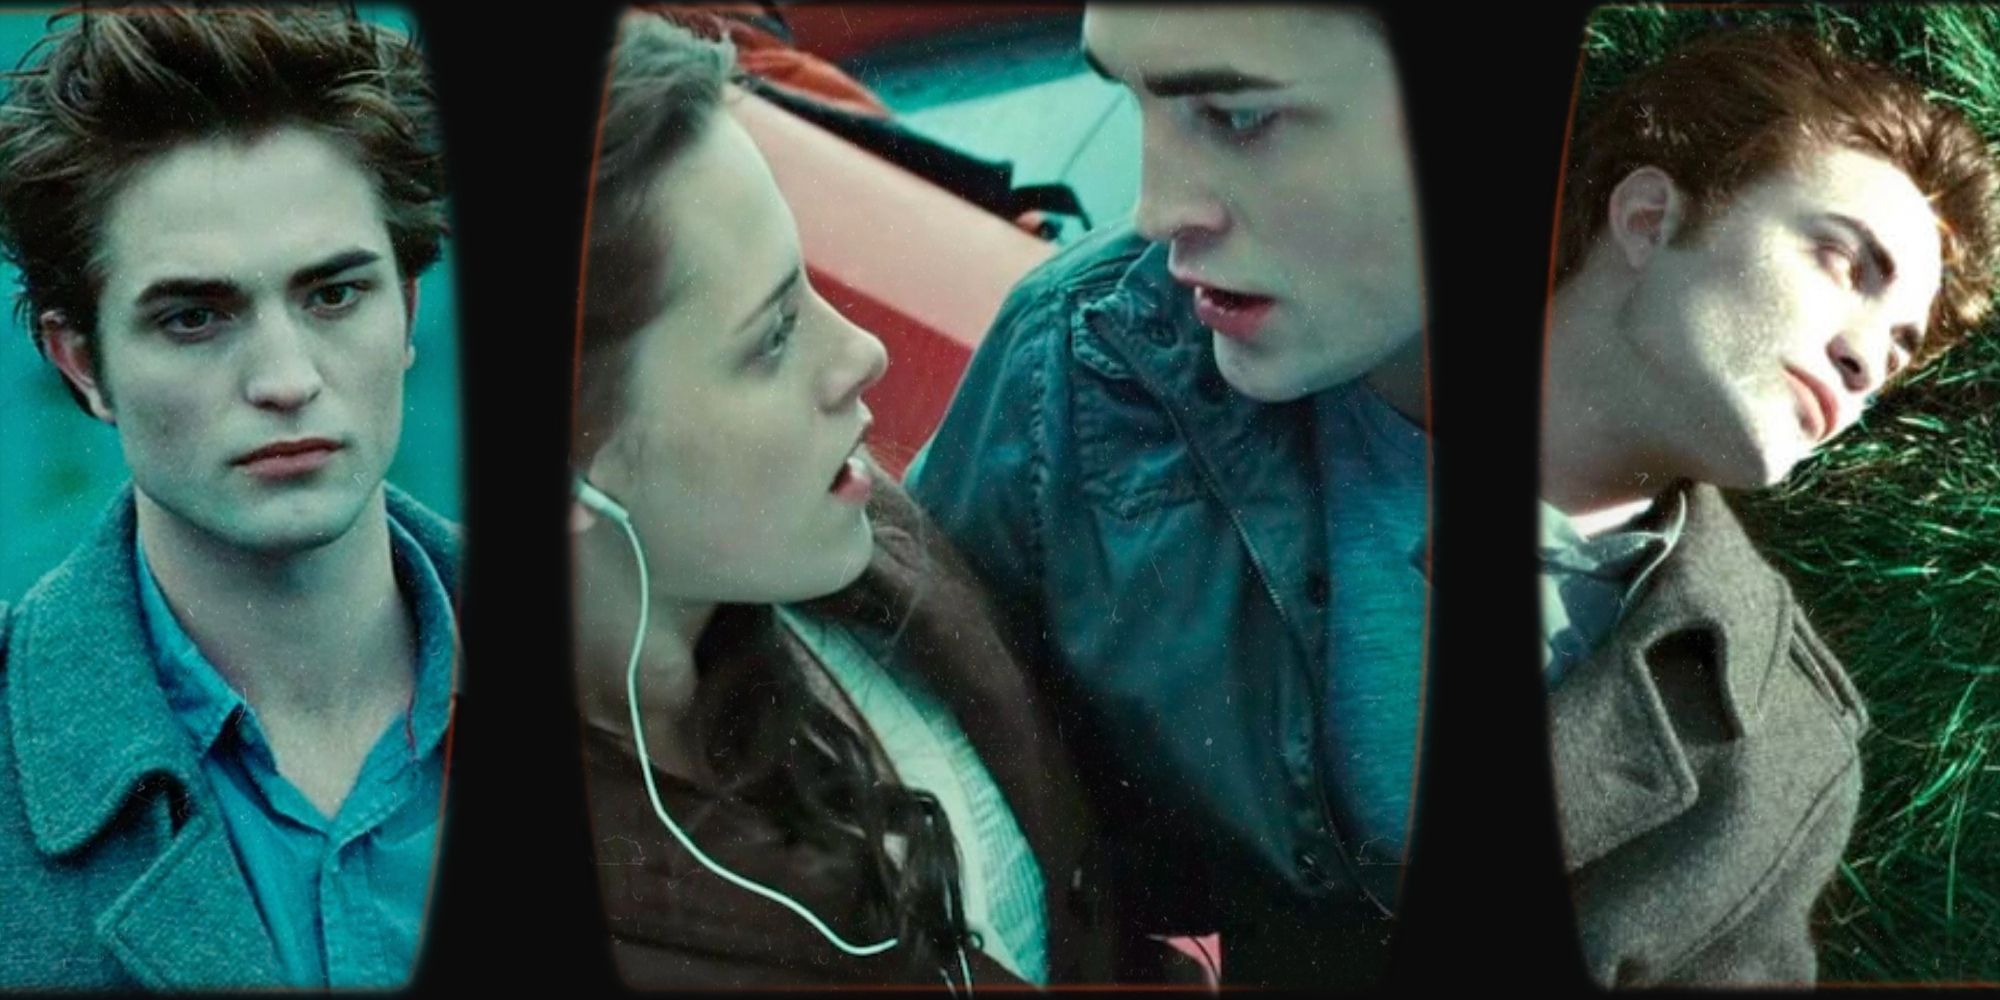 Robert-Pattinson-and-Kristen-Stewart-in-Twilight-1